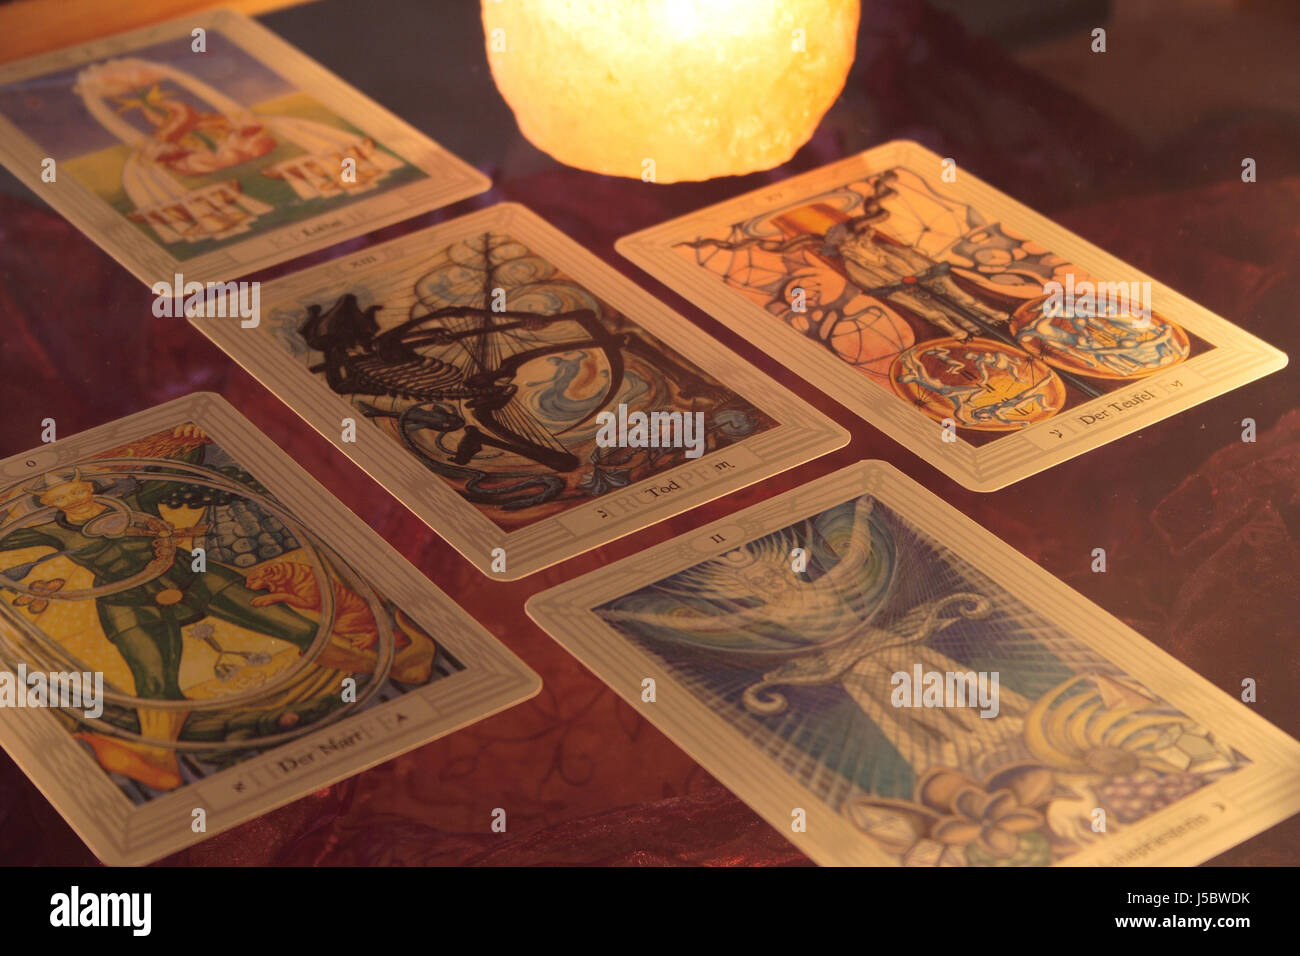 esoteric tarot cards candlelight Stock Photo